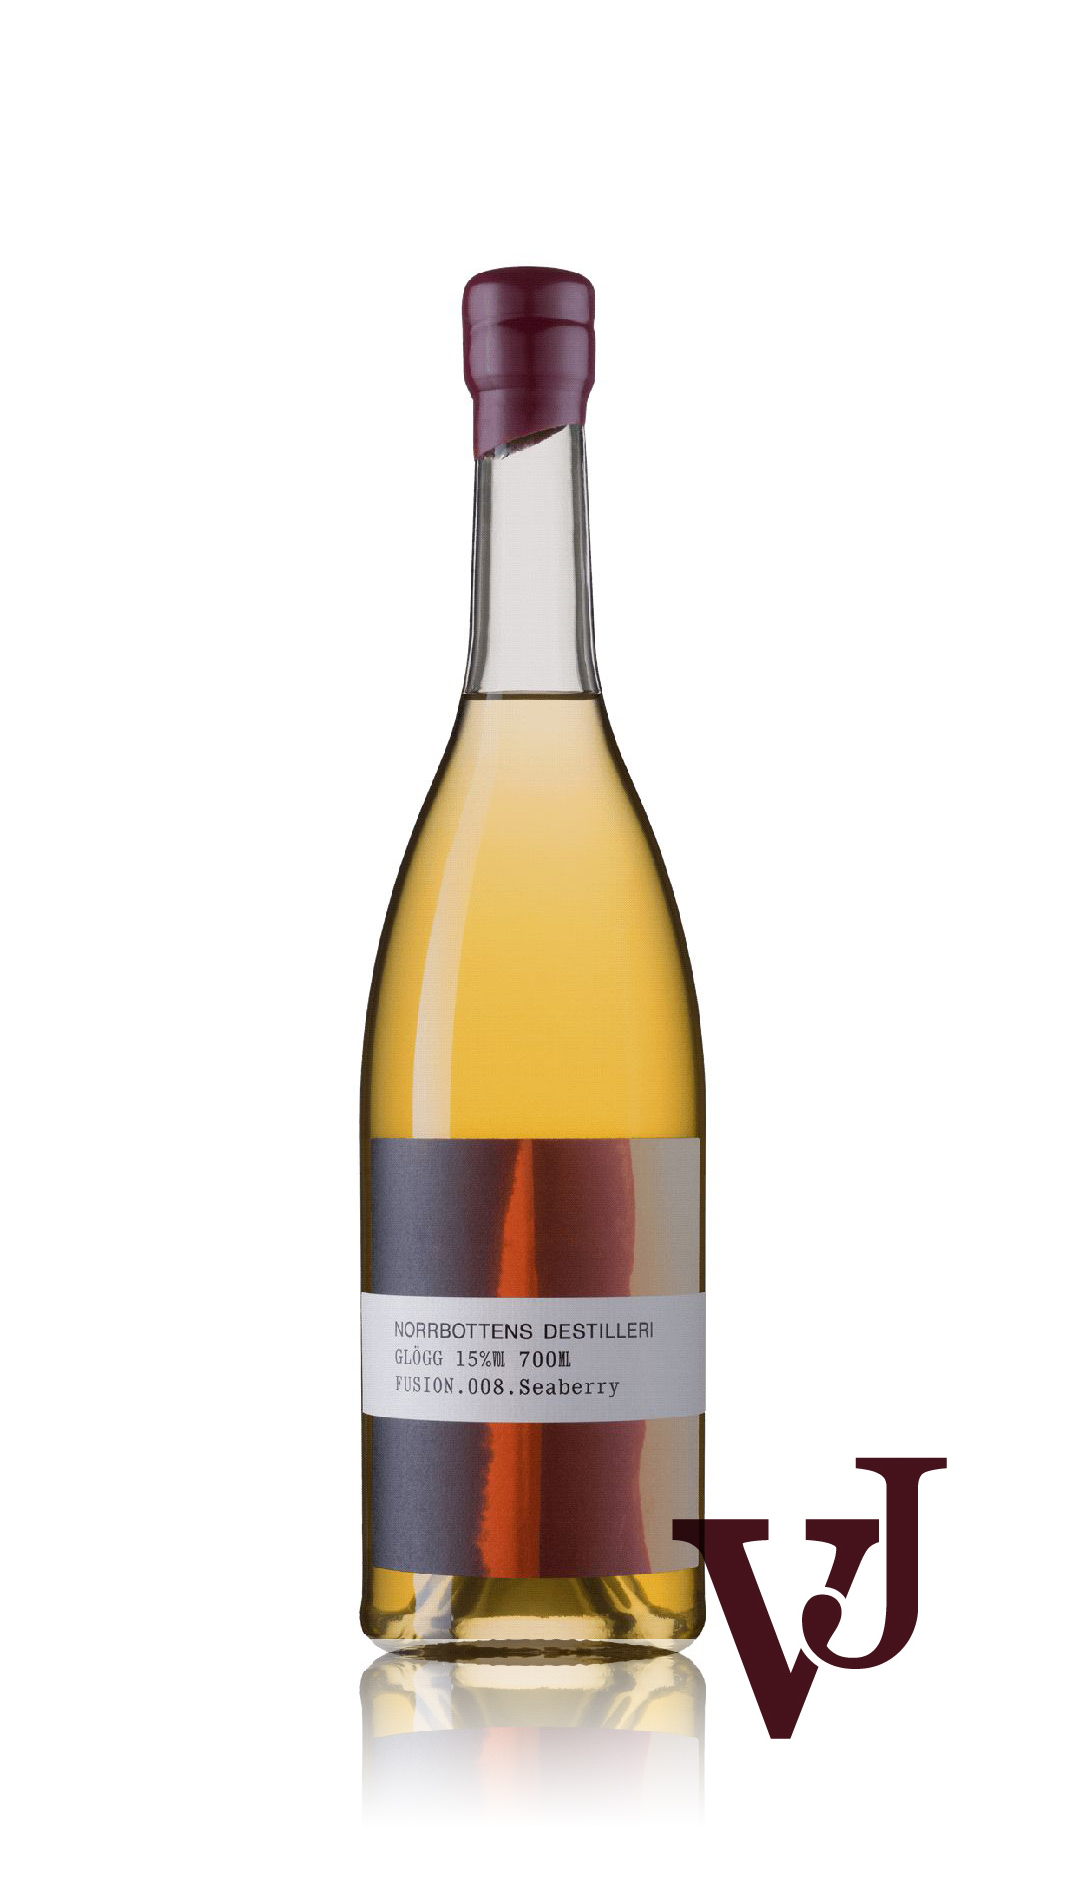 Övrigt Vin - Norrbottens Destilleri Fusion.008.Seaberry Glögg artikel nummer 5156601 från producenten Norrbottens Destilleri från Sverige.